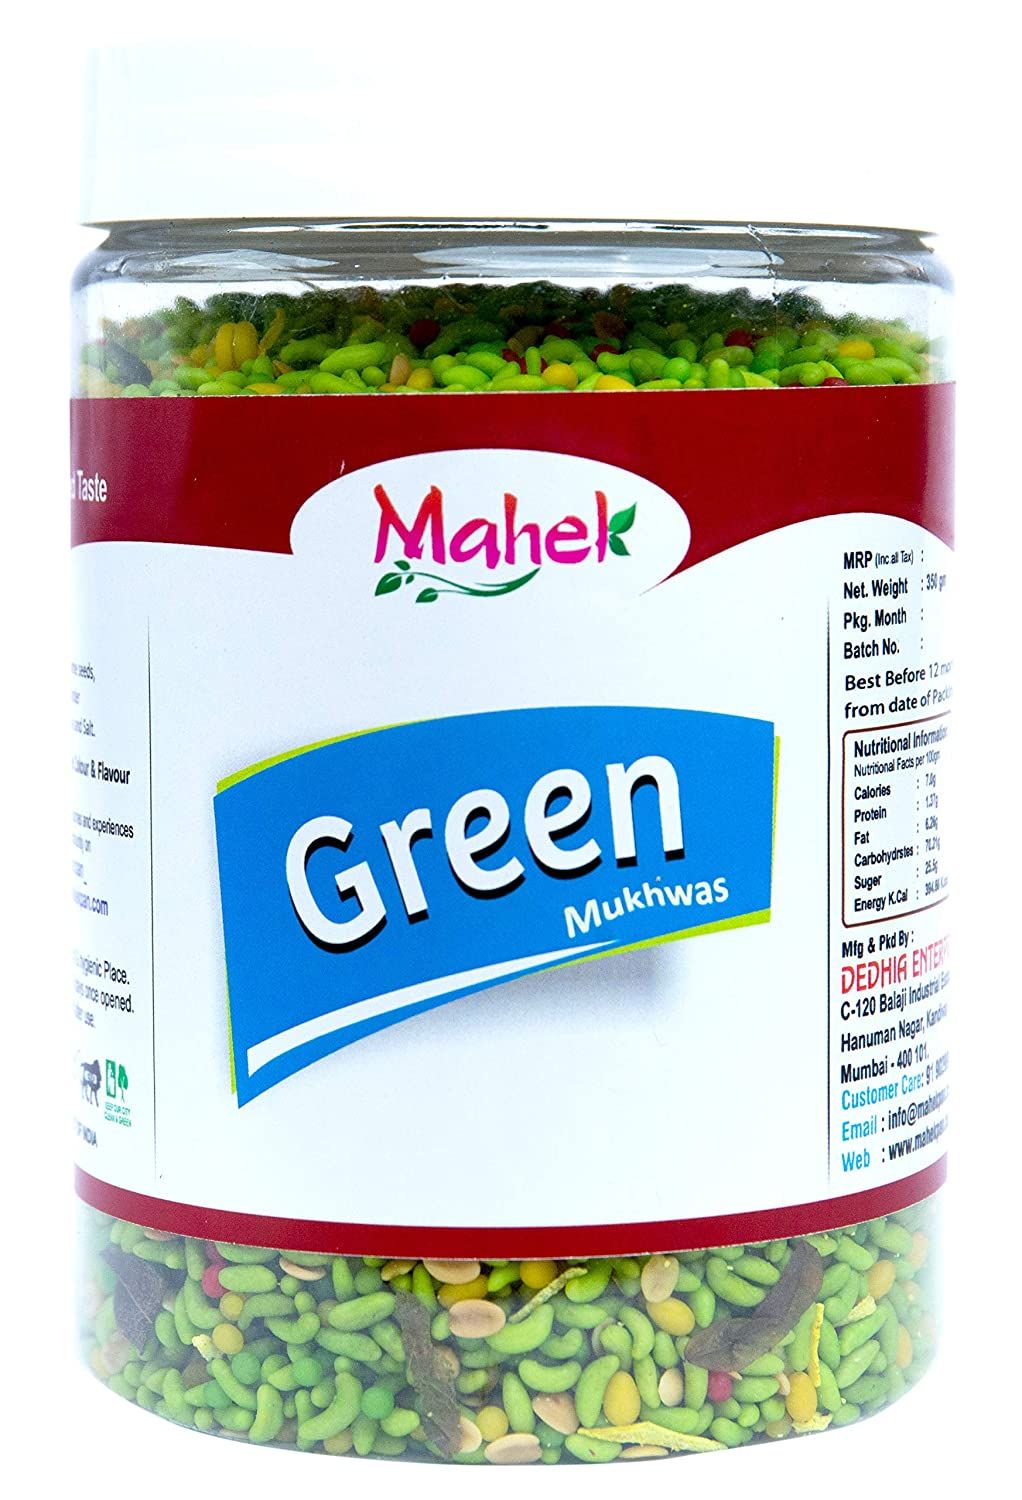 Mahek Green Mukhwas Image